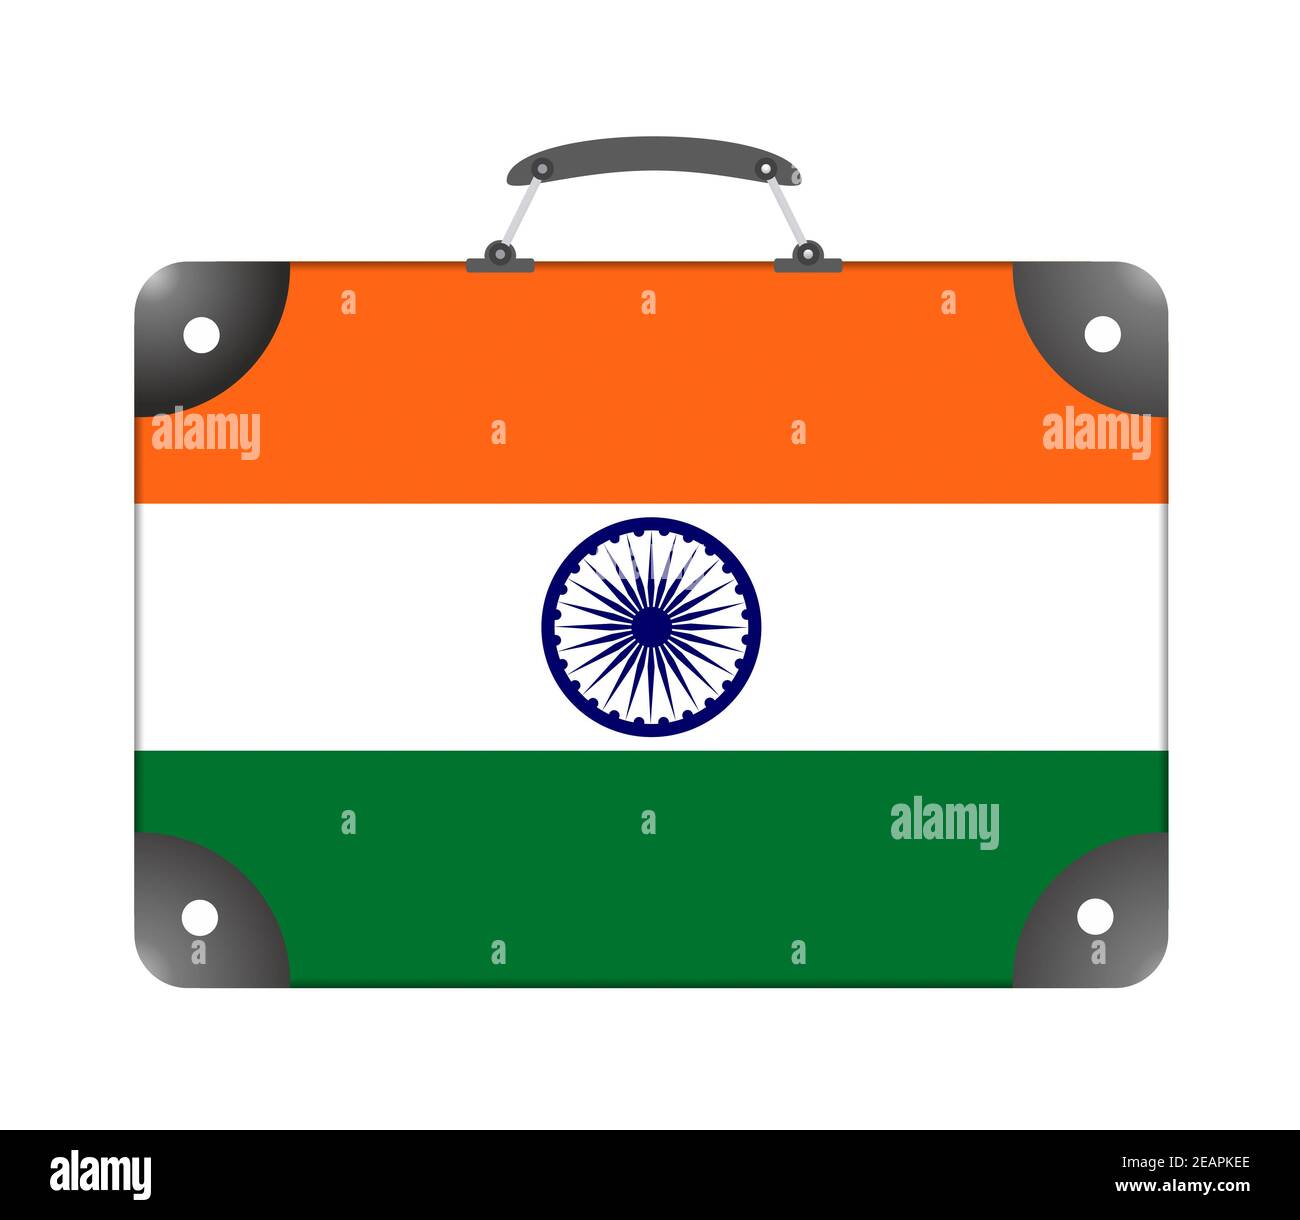 Drapeau de l'Inde sous forme de valise de voyage sur un arrière-plan blanc Banque D'Images